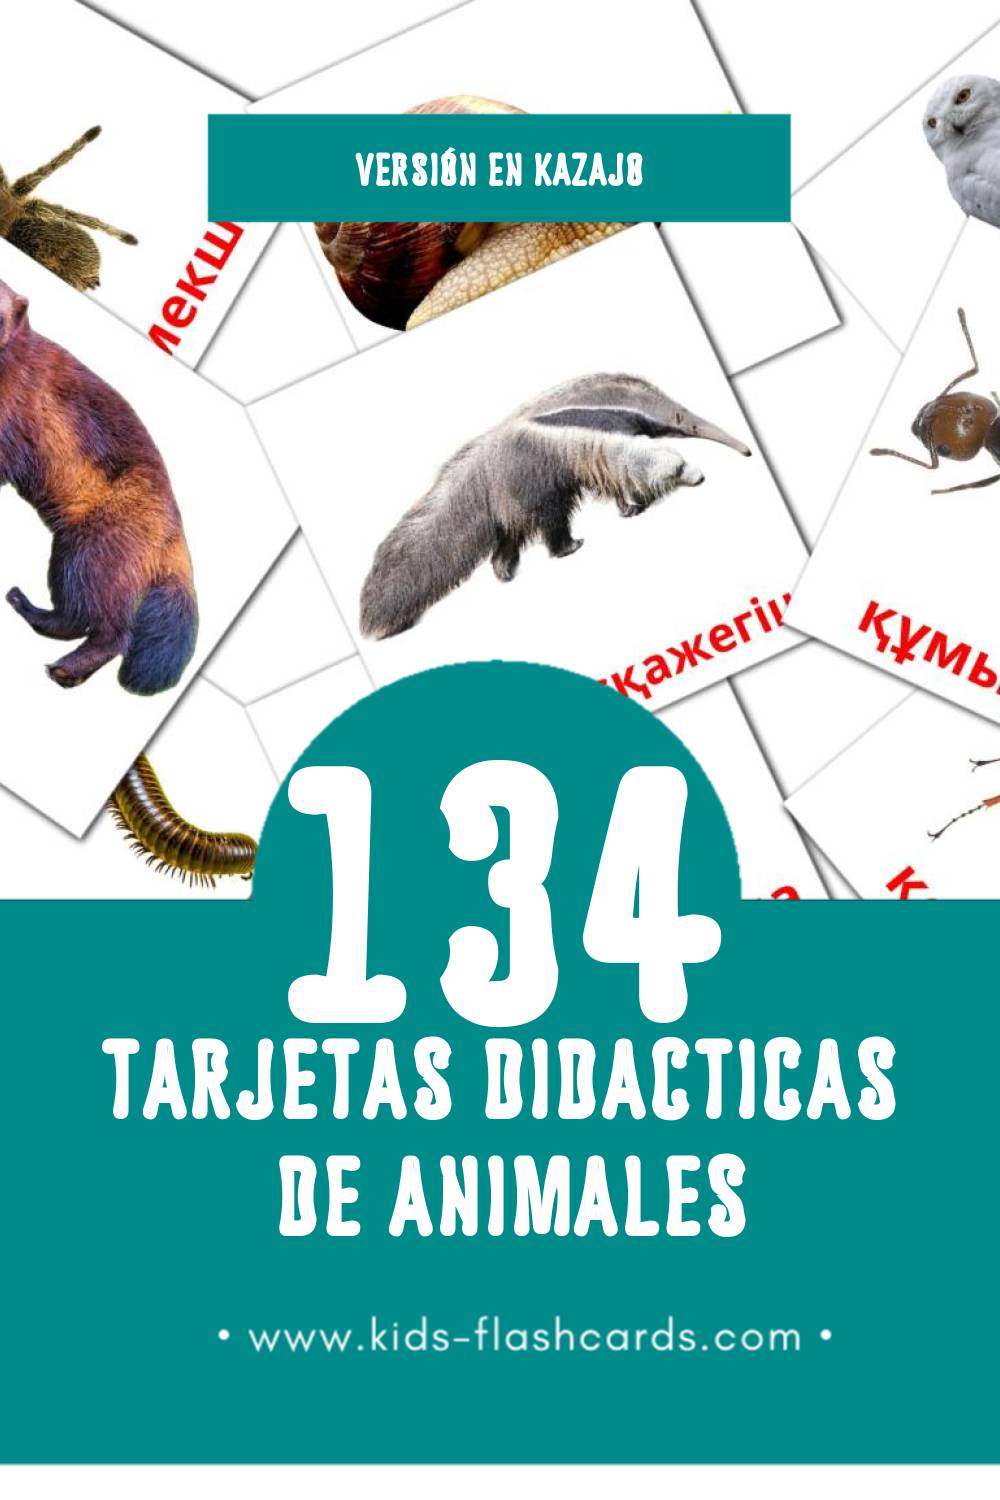 Tarjetas visuales de Жануарлар para niños pequeños (134 tarjetas en Kazajo)